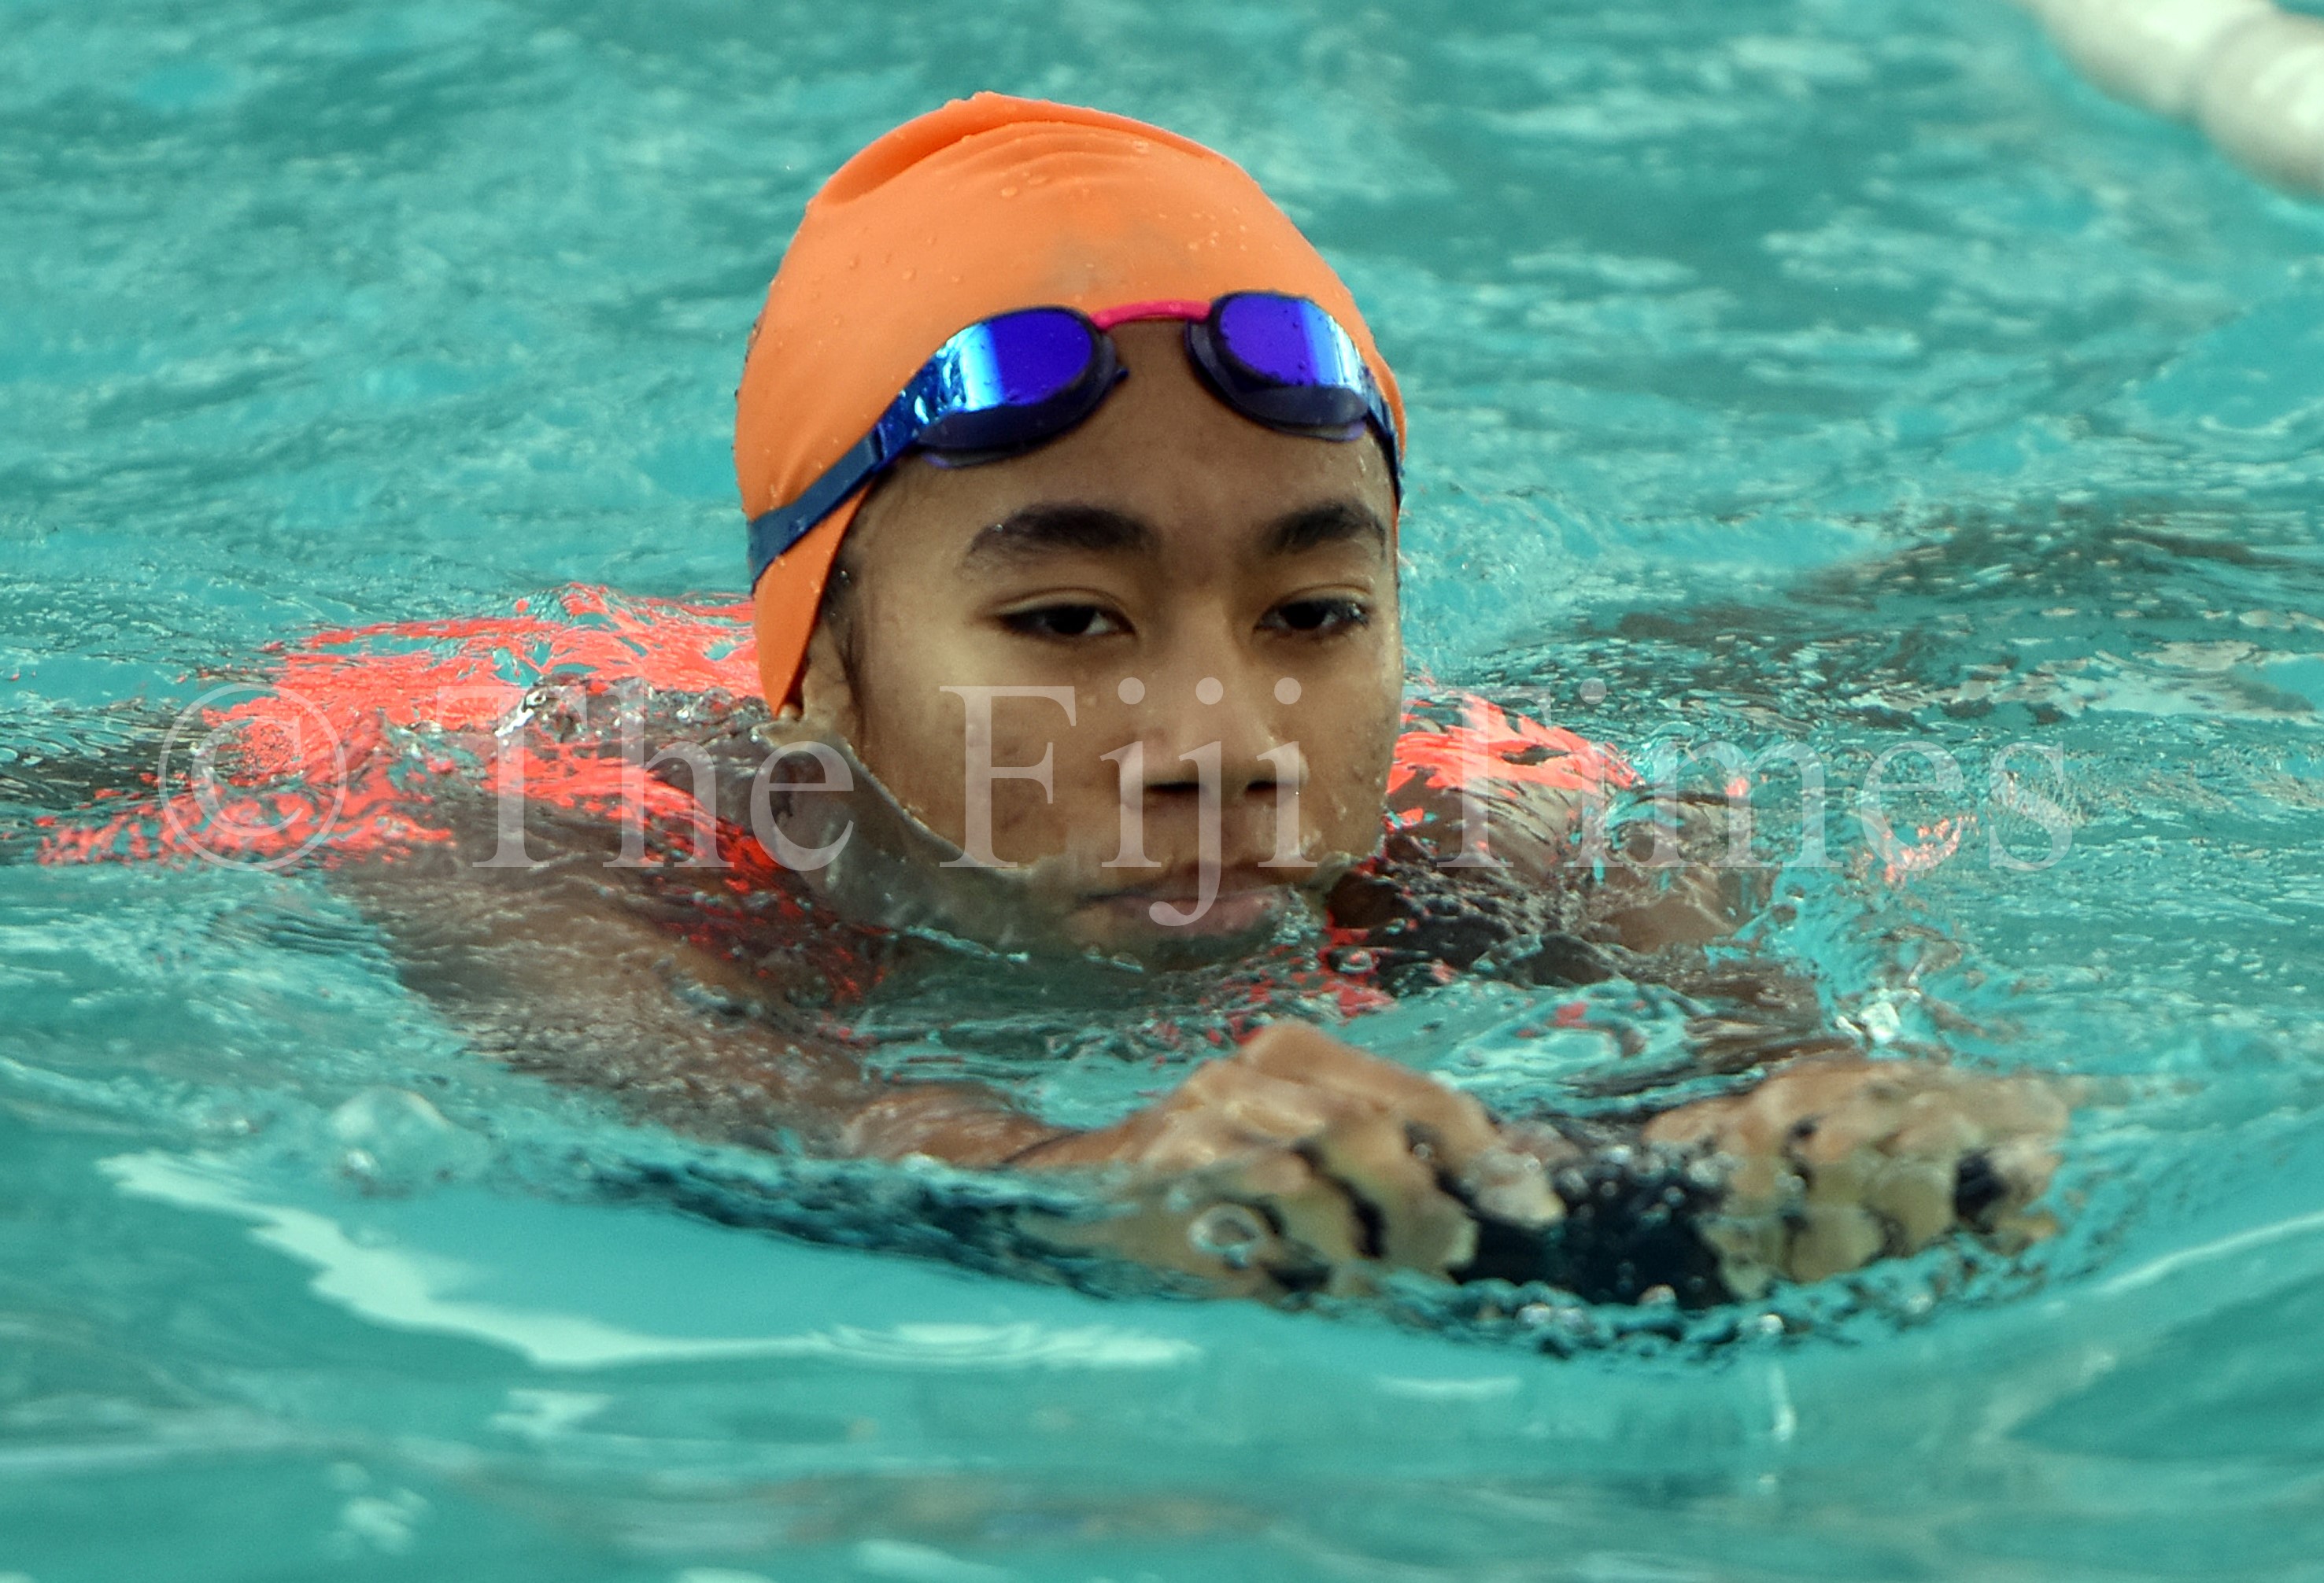 Fijian teen swimmer Muller sets her course.